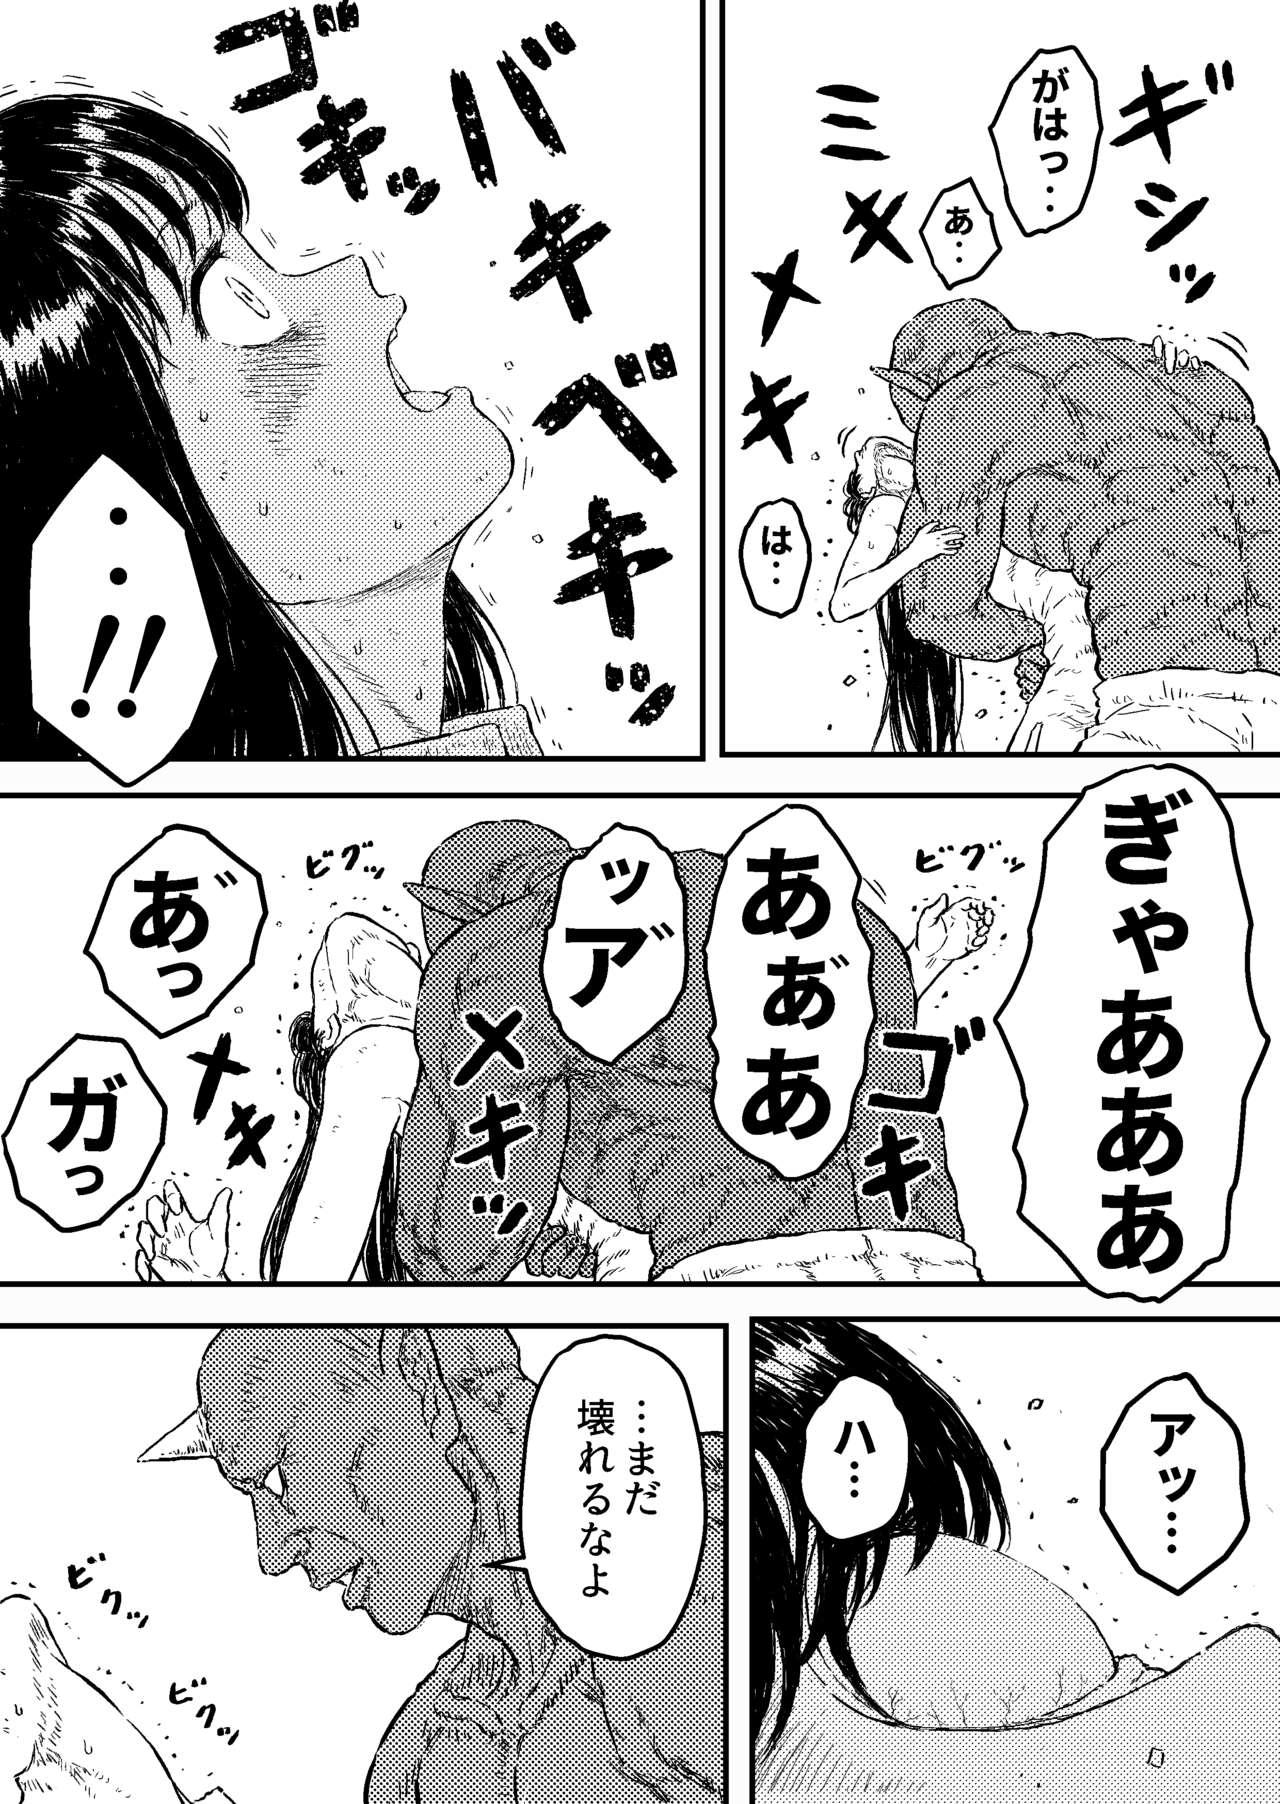 Transex Sutoranguru Gold 4 『Seigi no hiroin kosatsu subete o kake te tataka ta shojo no unmei』 - Original Amateur Cumshots - Page 7